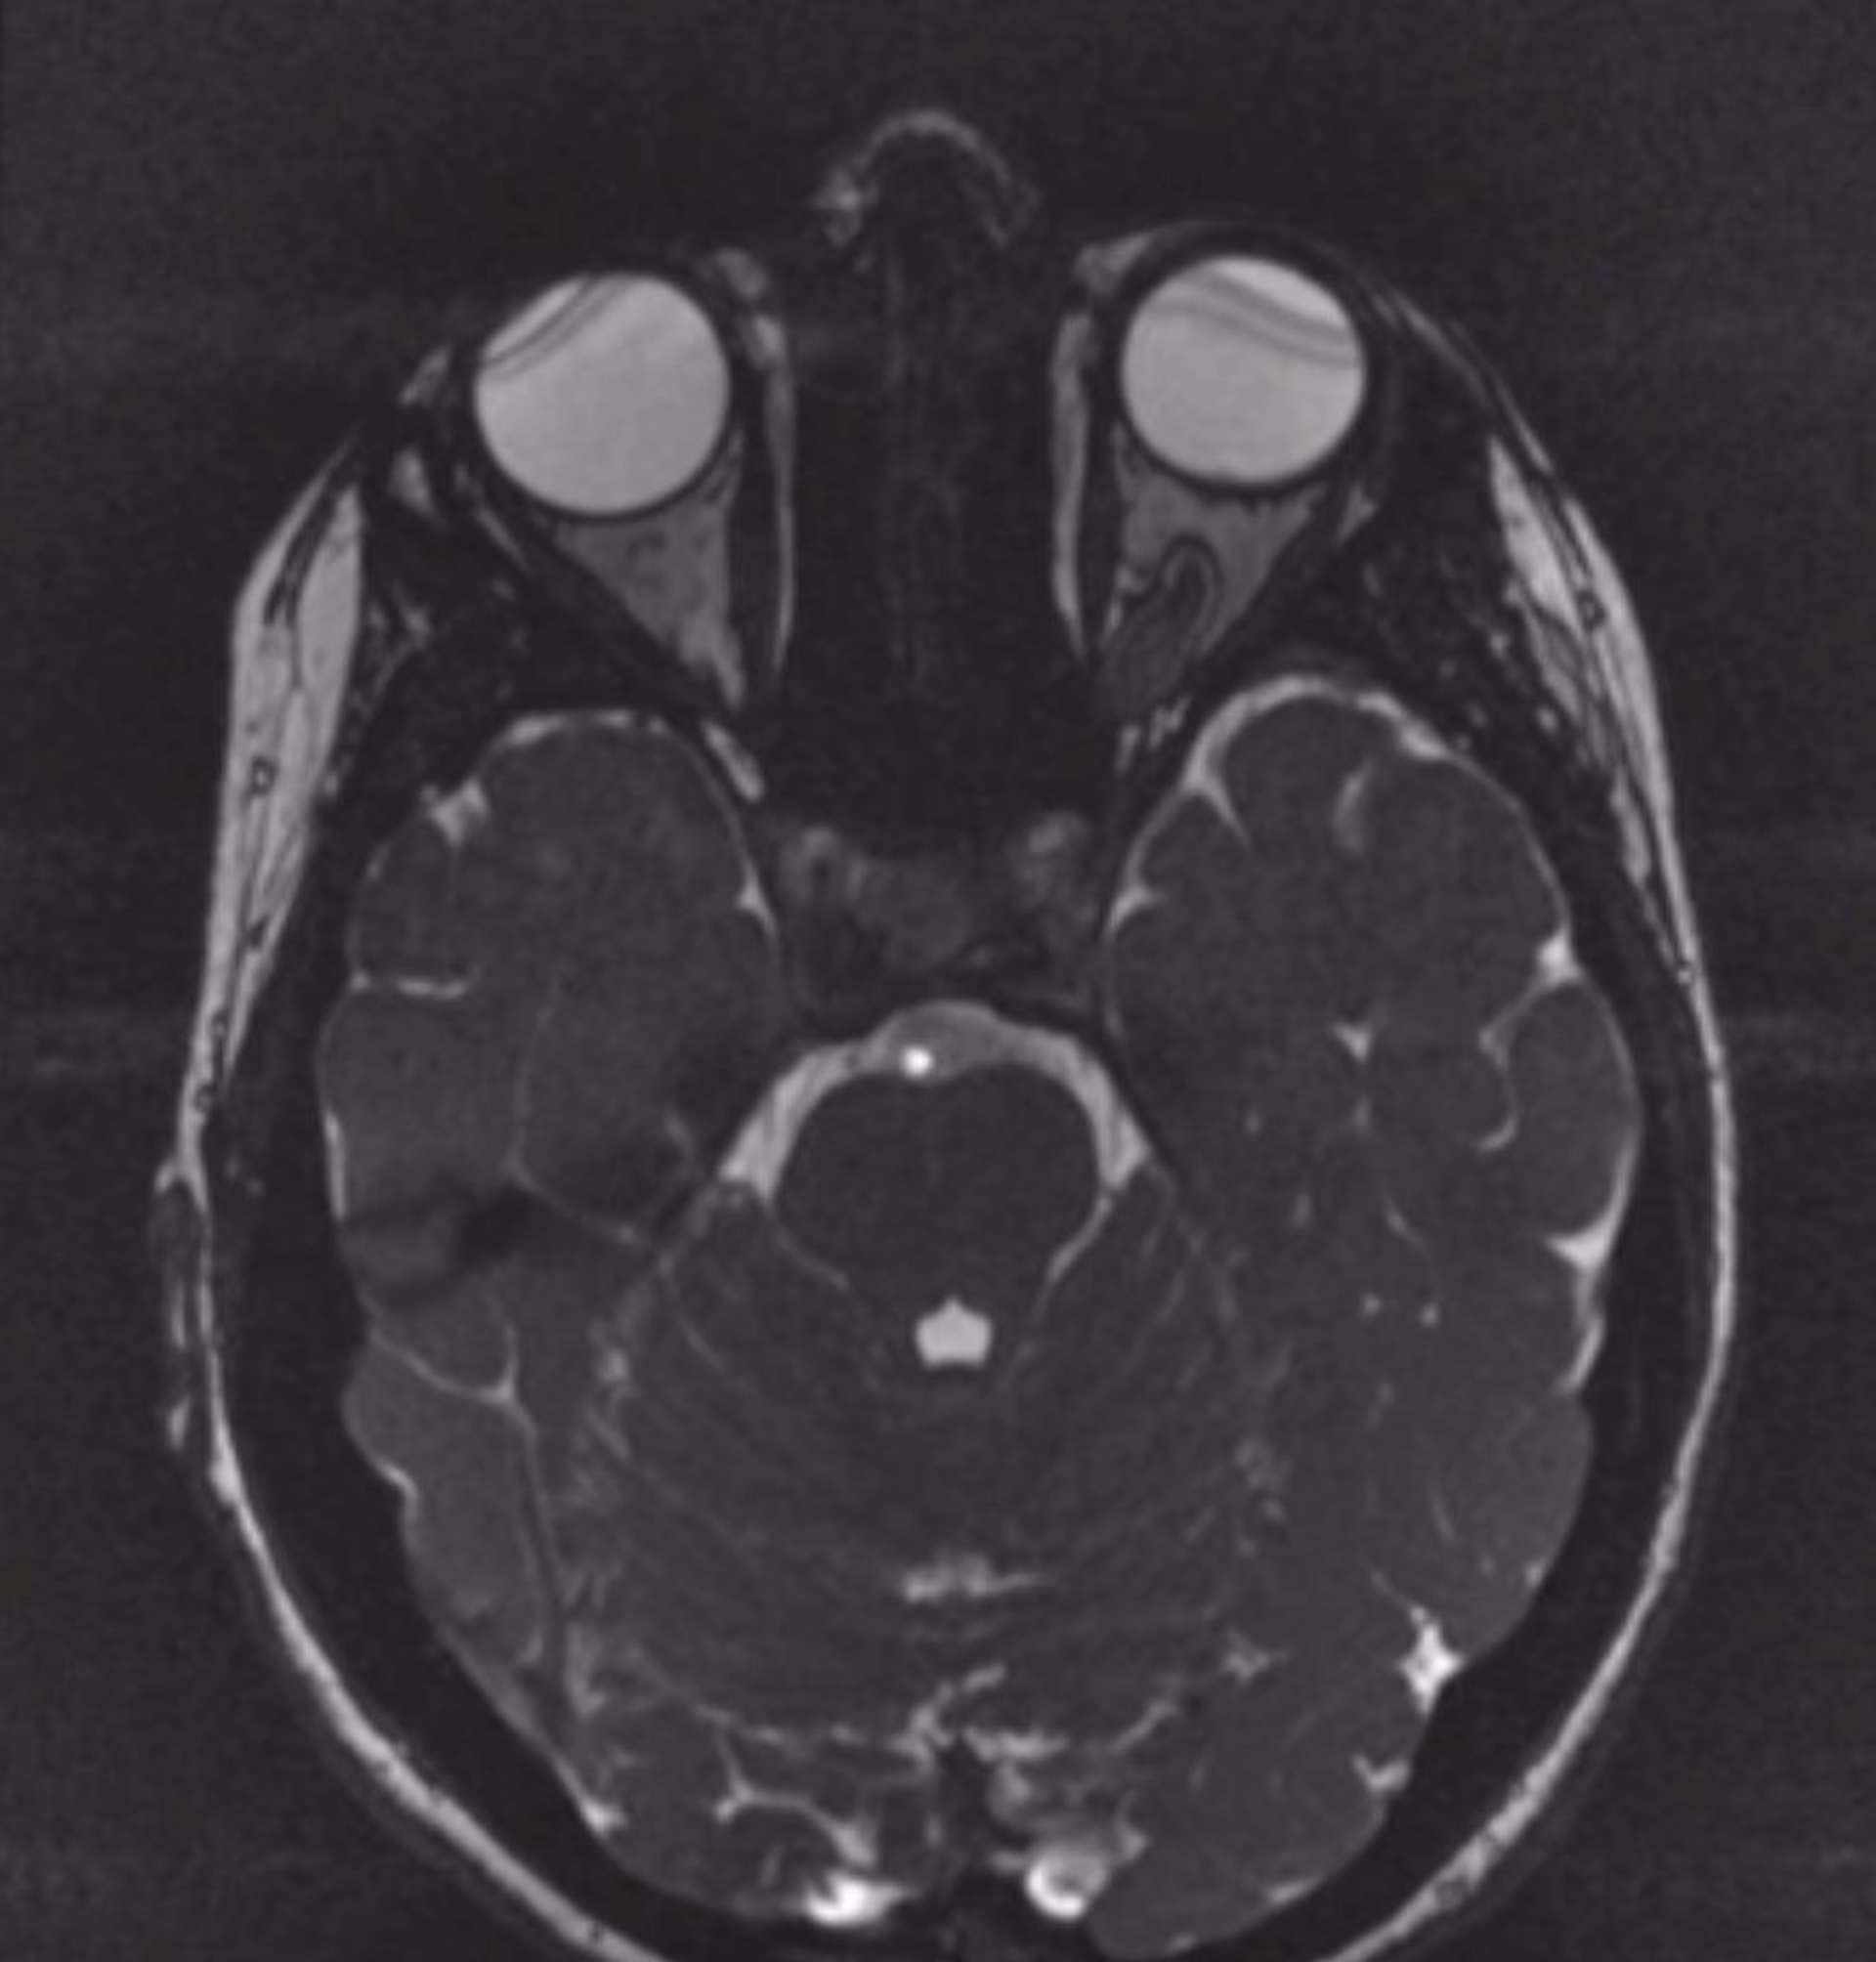 IRM cérébrale, découverte d’un gliome du nerf optique gauche dans le cadre du bilan d’une pâleur papillaire gauche (série personnelle).
